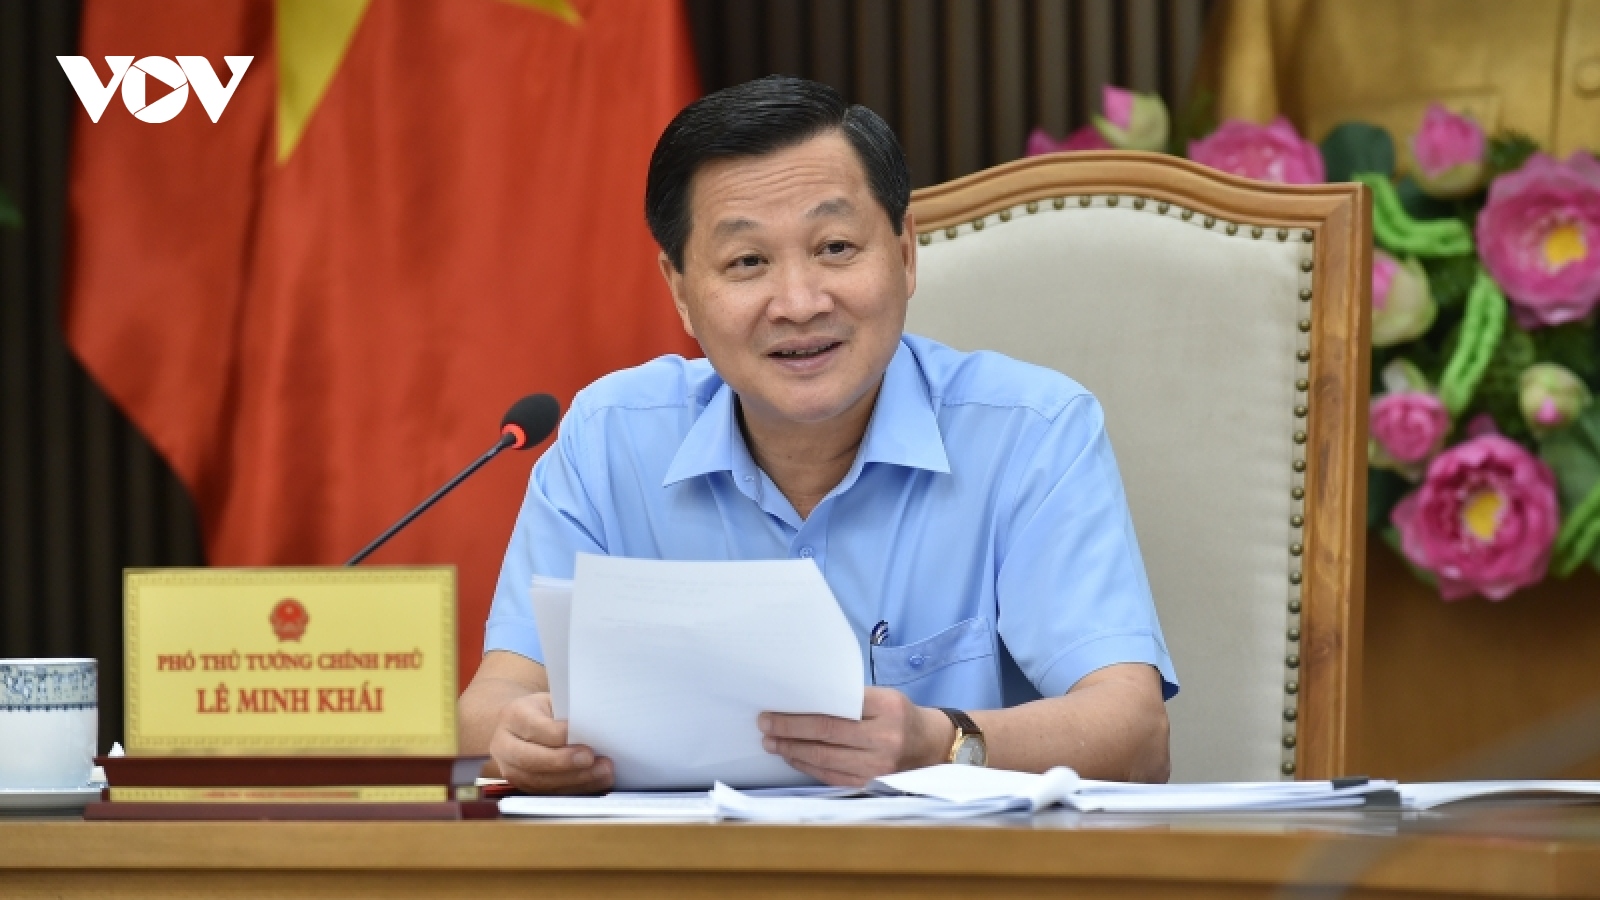 Phó Thủ tướng Lê Minh Khái chủ trì họp triển khai kế hoạch đầu tư công trung hạn